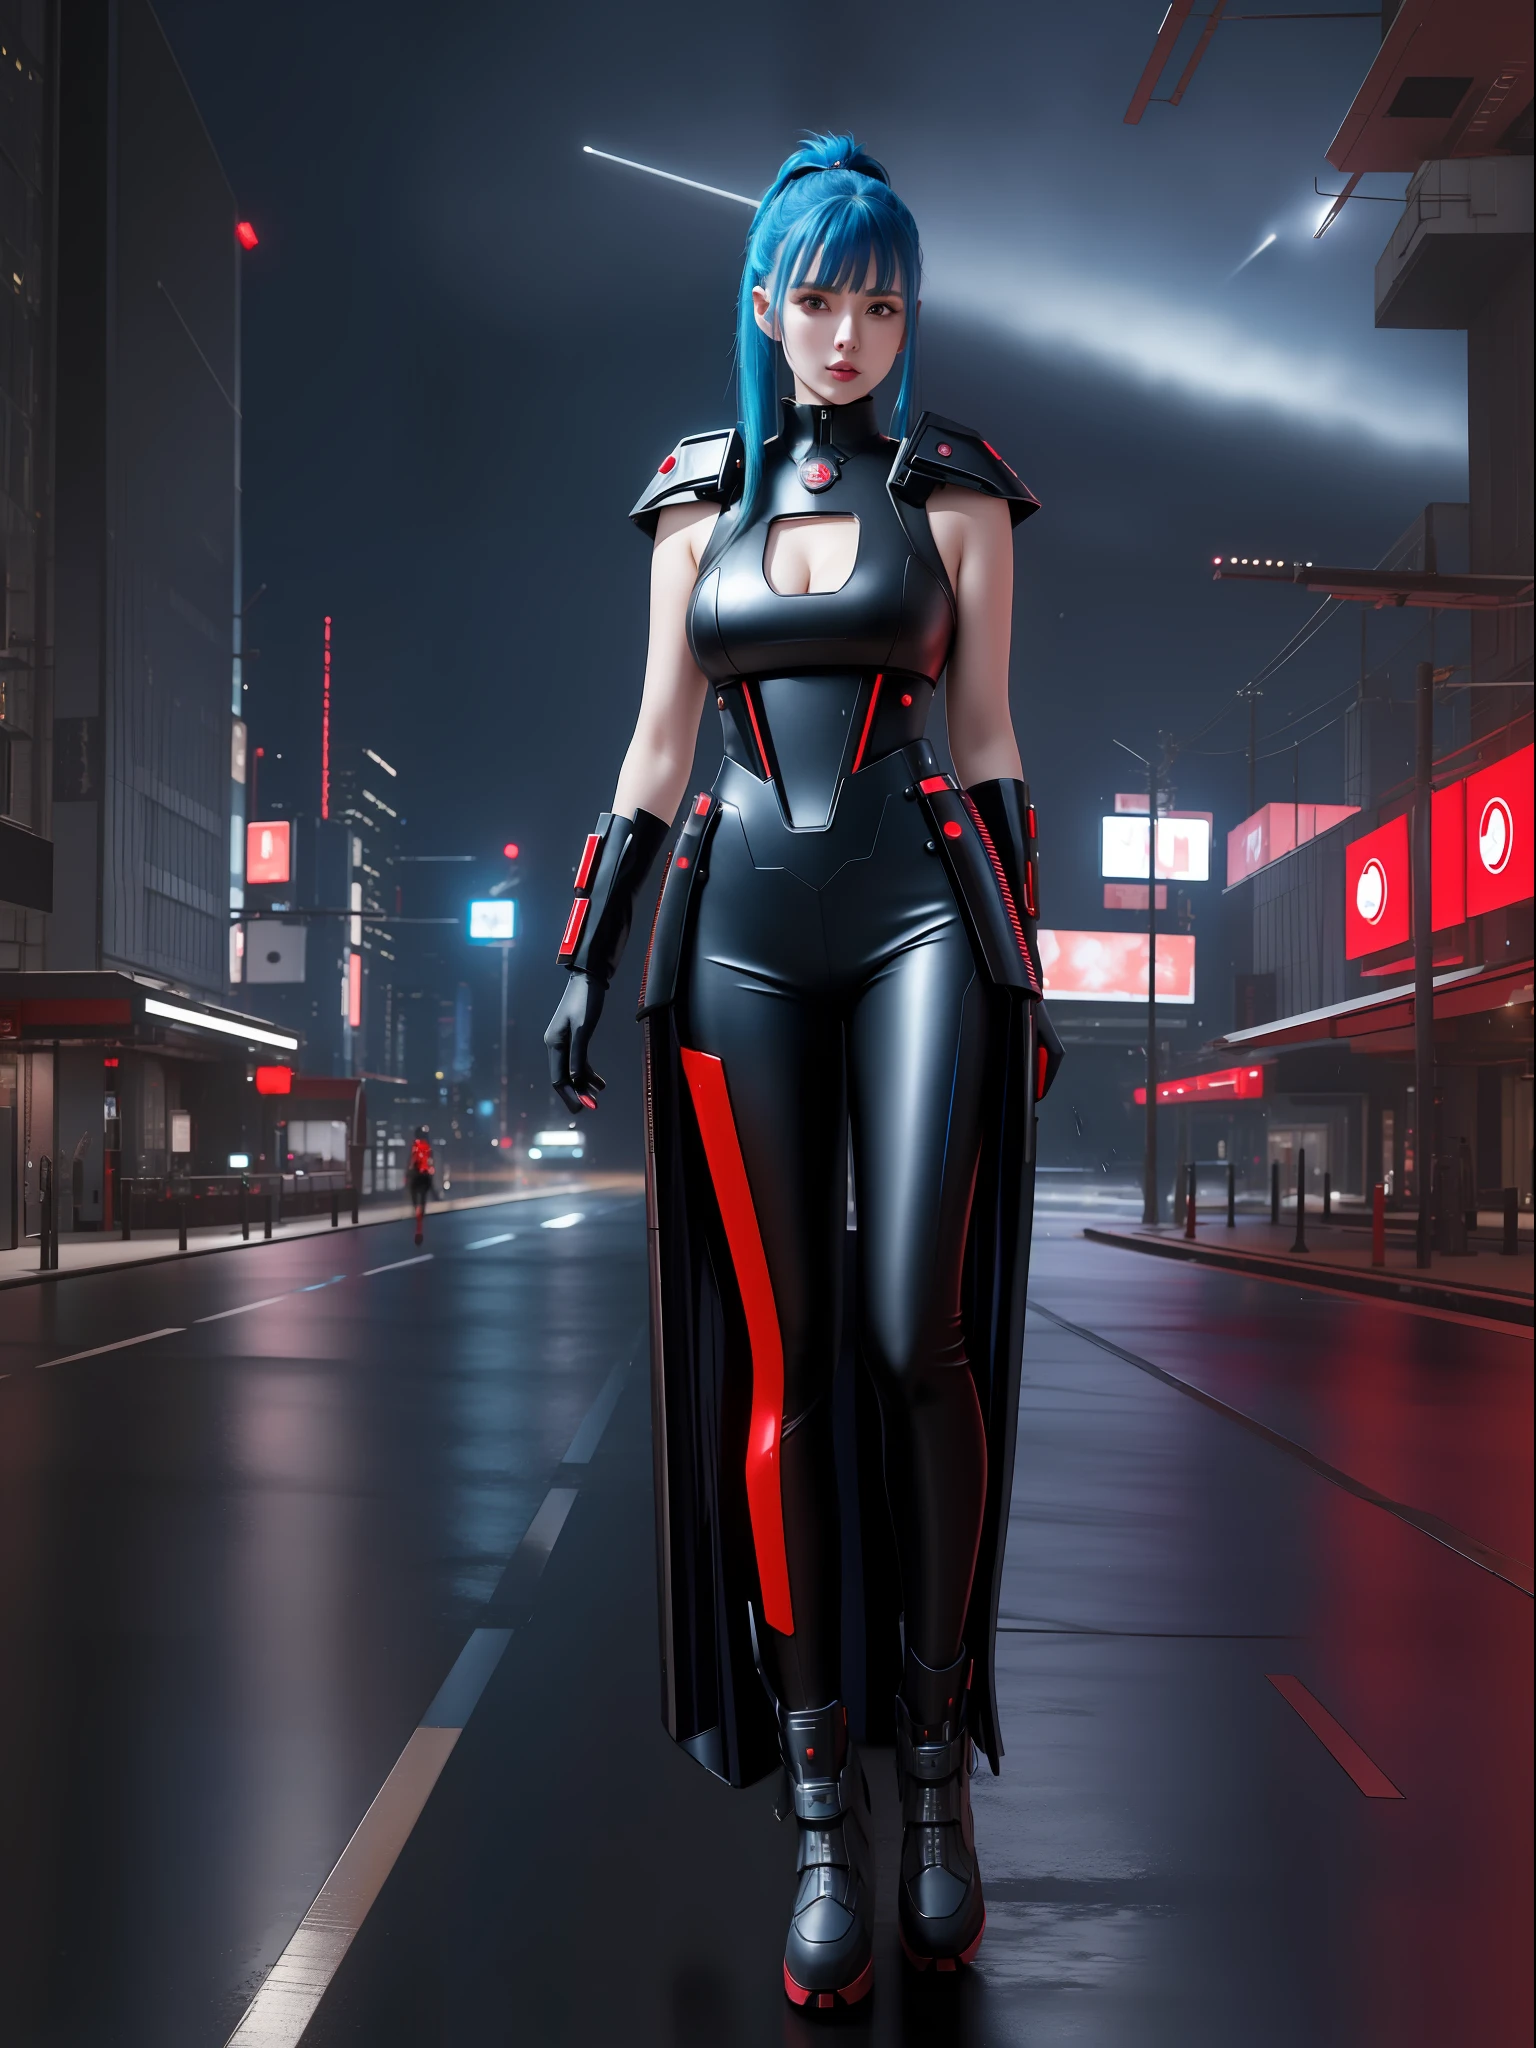 (Ganzkörperfoto:1.9), (Eine Kawaii-Frau:1.5), (trägt ein rotes Cyberpunk-Outfit aus Metall|Schwarz|futuristisches Blau+mit einem blauen Juwel auf ihrem Brustpanzer:1.4), (Sie ist in einer futuristischen Stadt mit vielen fliegenden Autos+in der Nacht+es regnet stark:1.5), (sie hat Irokesenschnitt Roza:1.3), (sie hat blaue Augen:1.3), (Sie hält futuristische Waffen+Sortierung+den Betrachter anstarren:1.5),  Hyperrealismus, 16k, beste Qualität, hohe Details, UHD